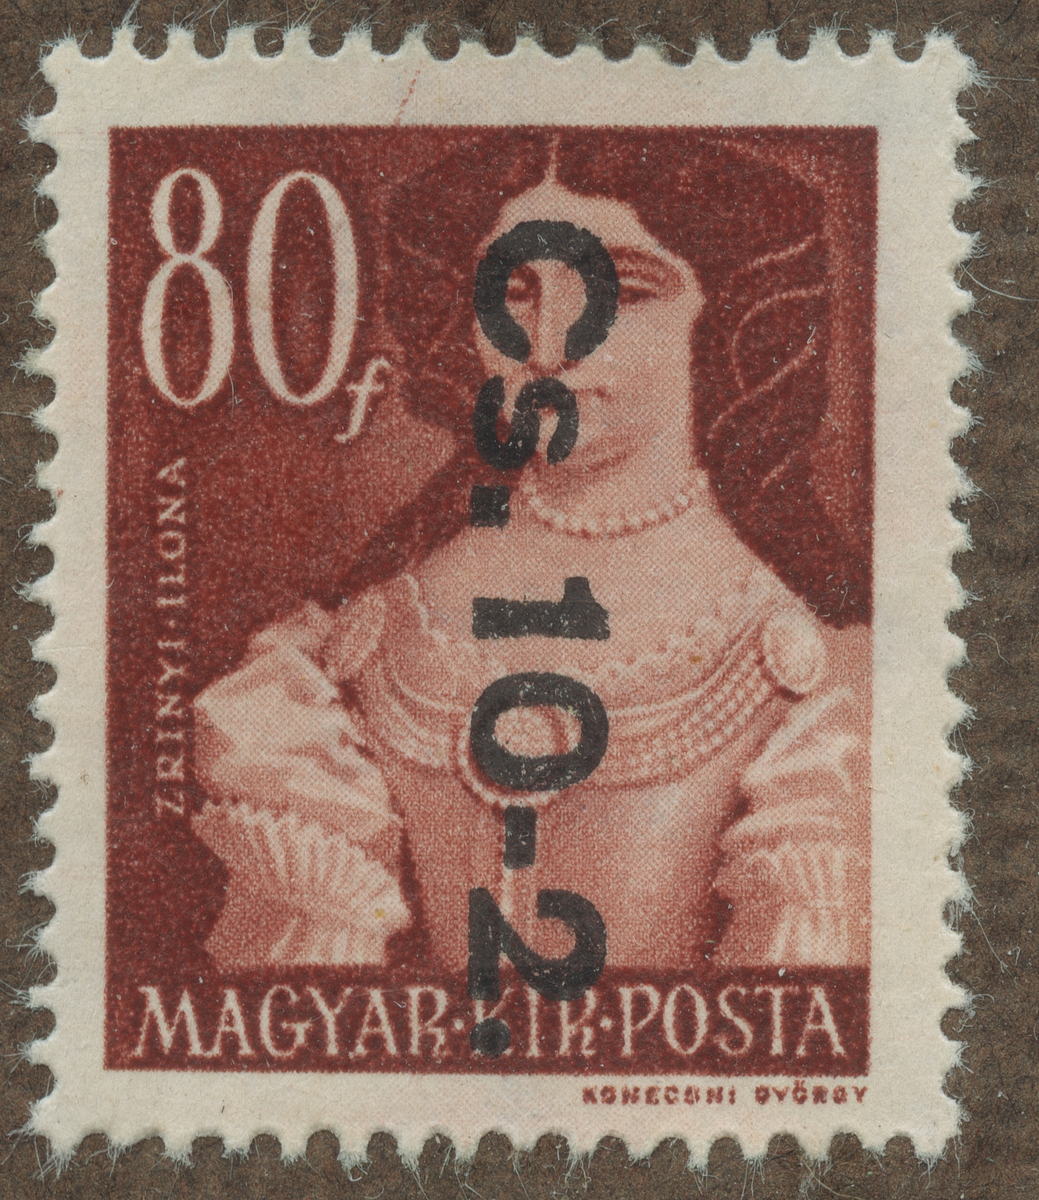 Frimärke ur Gösta Bodmans filatelistiska motivsamling, påbörjad 1950.
Frimärke från Ungern, 1945. Motiv av Ilona Zrinyi Ungerska.